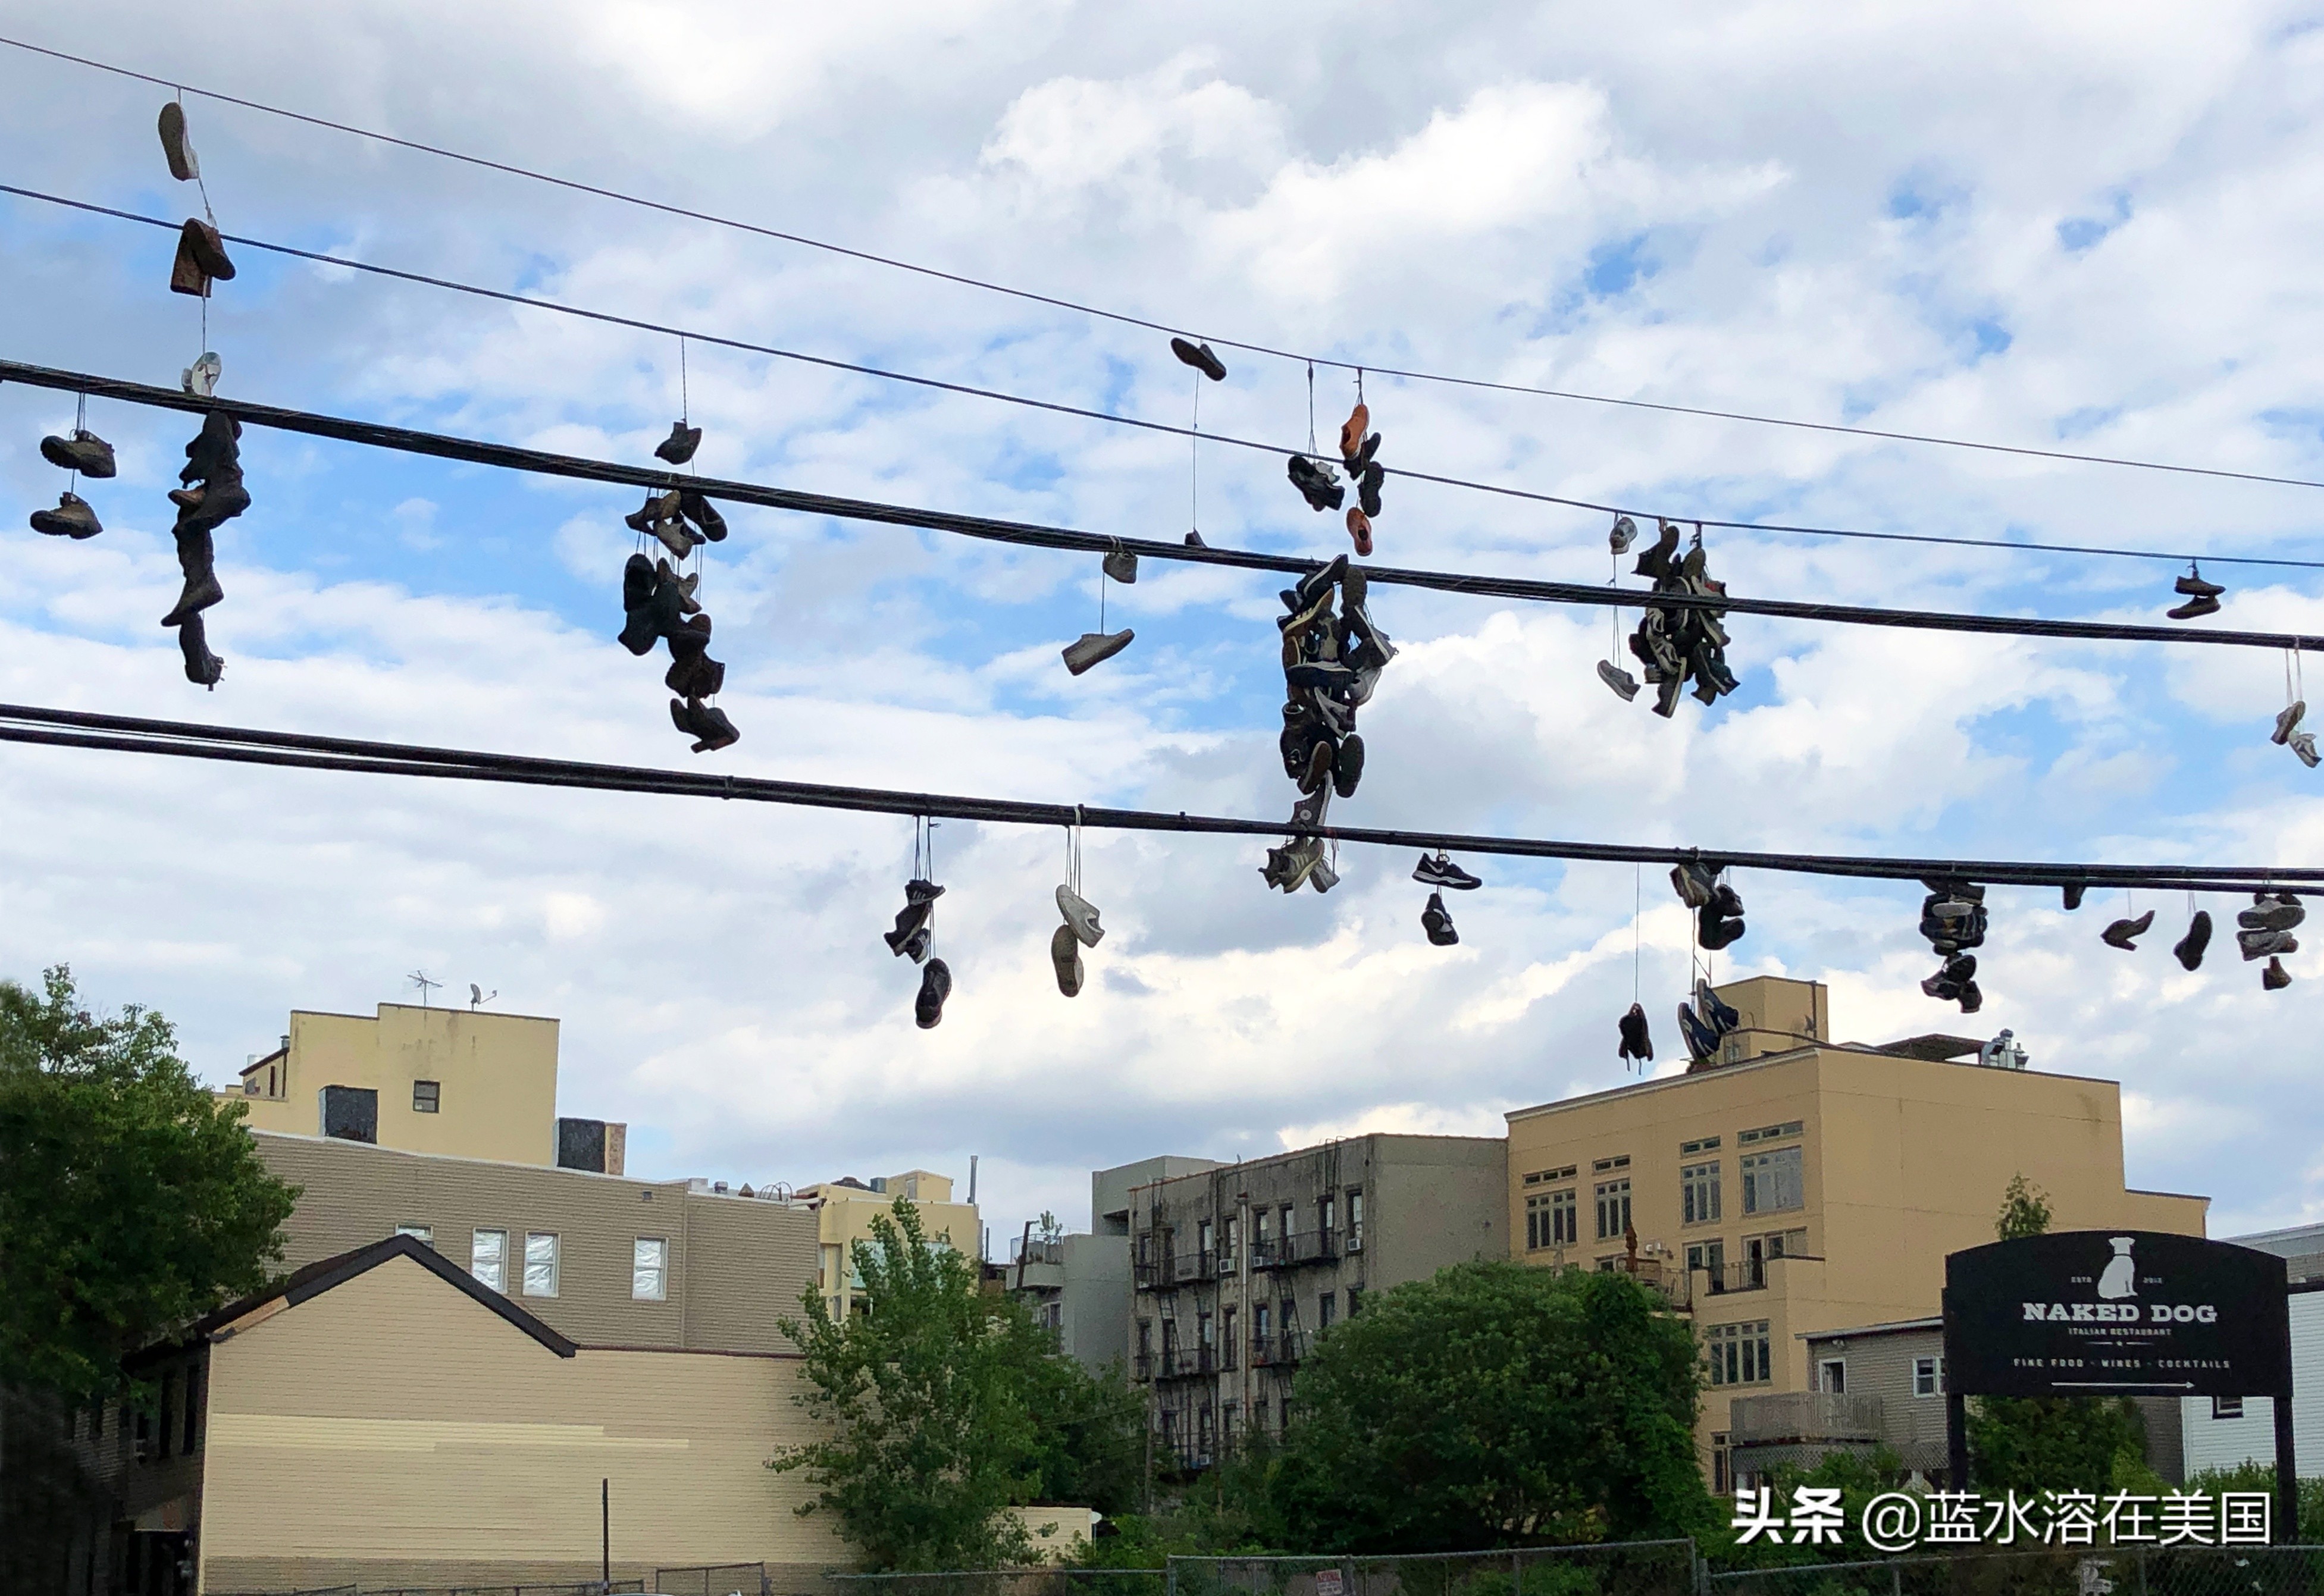 美国的街头，为什么总会有挂在电线上的鞋子？